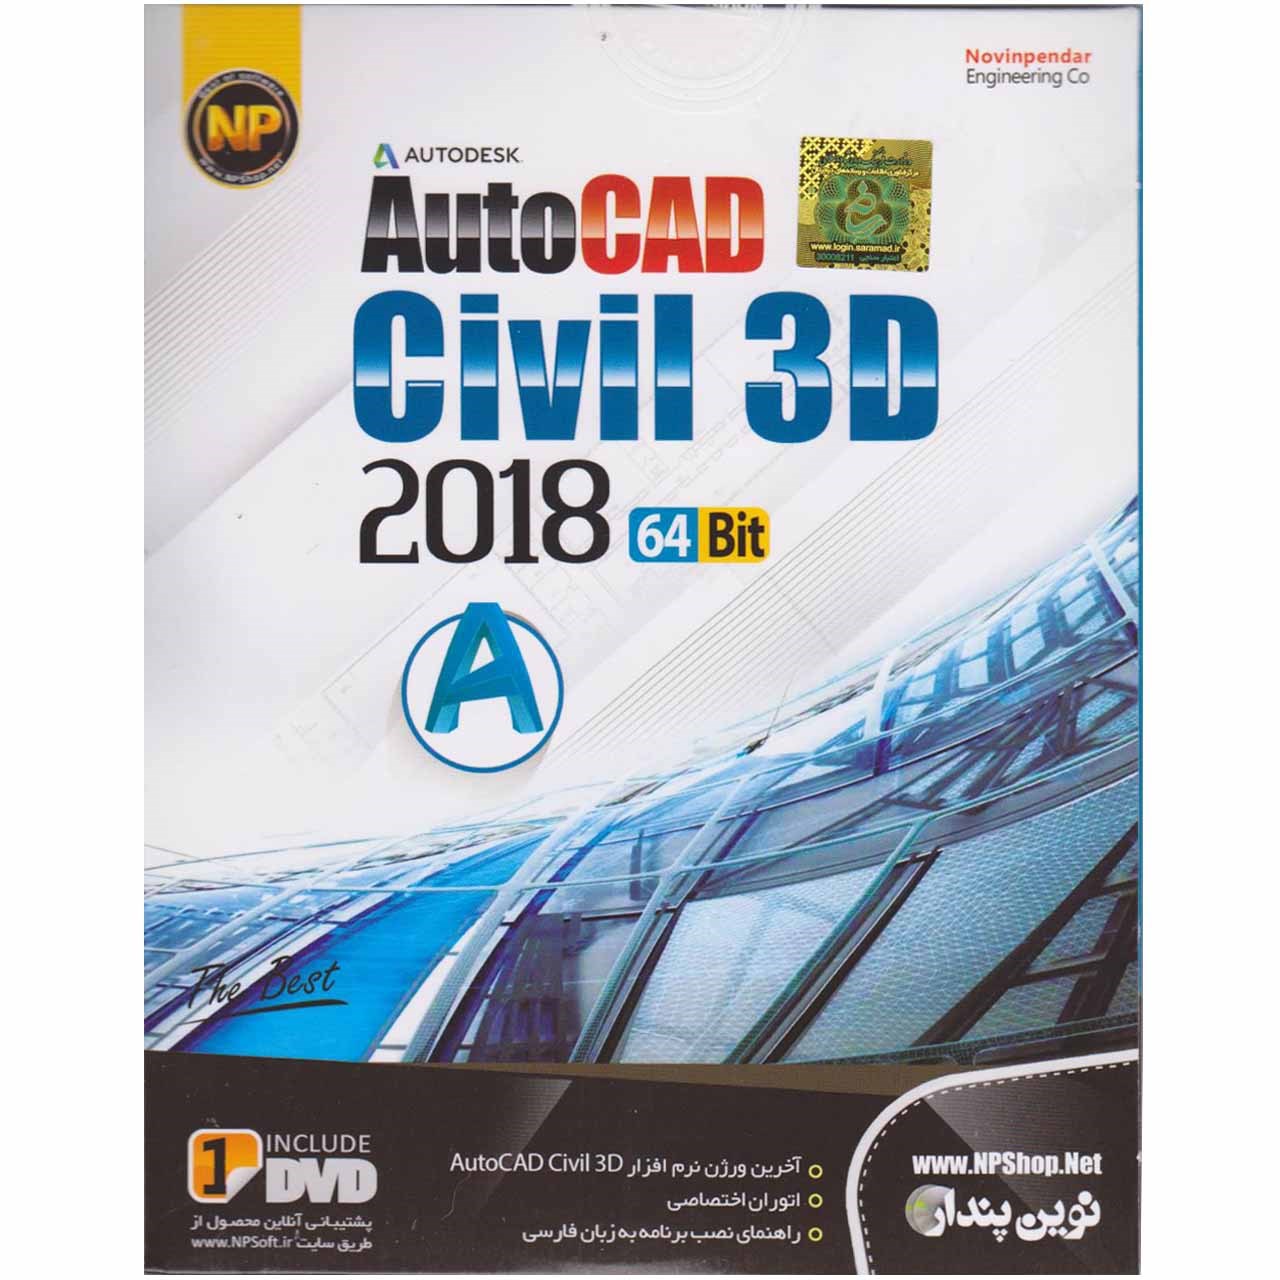 نرم افزار  AutoCad Civil 3D  2018  64Bit  نشر نوین پندار